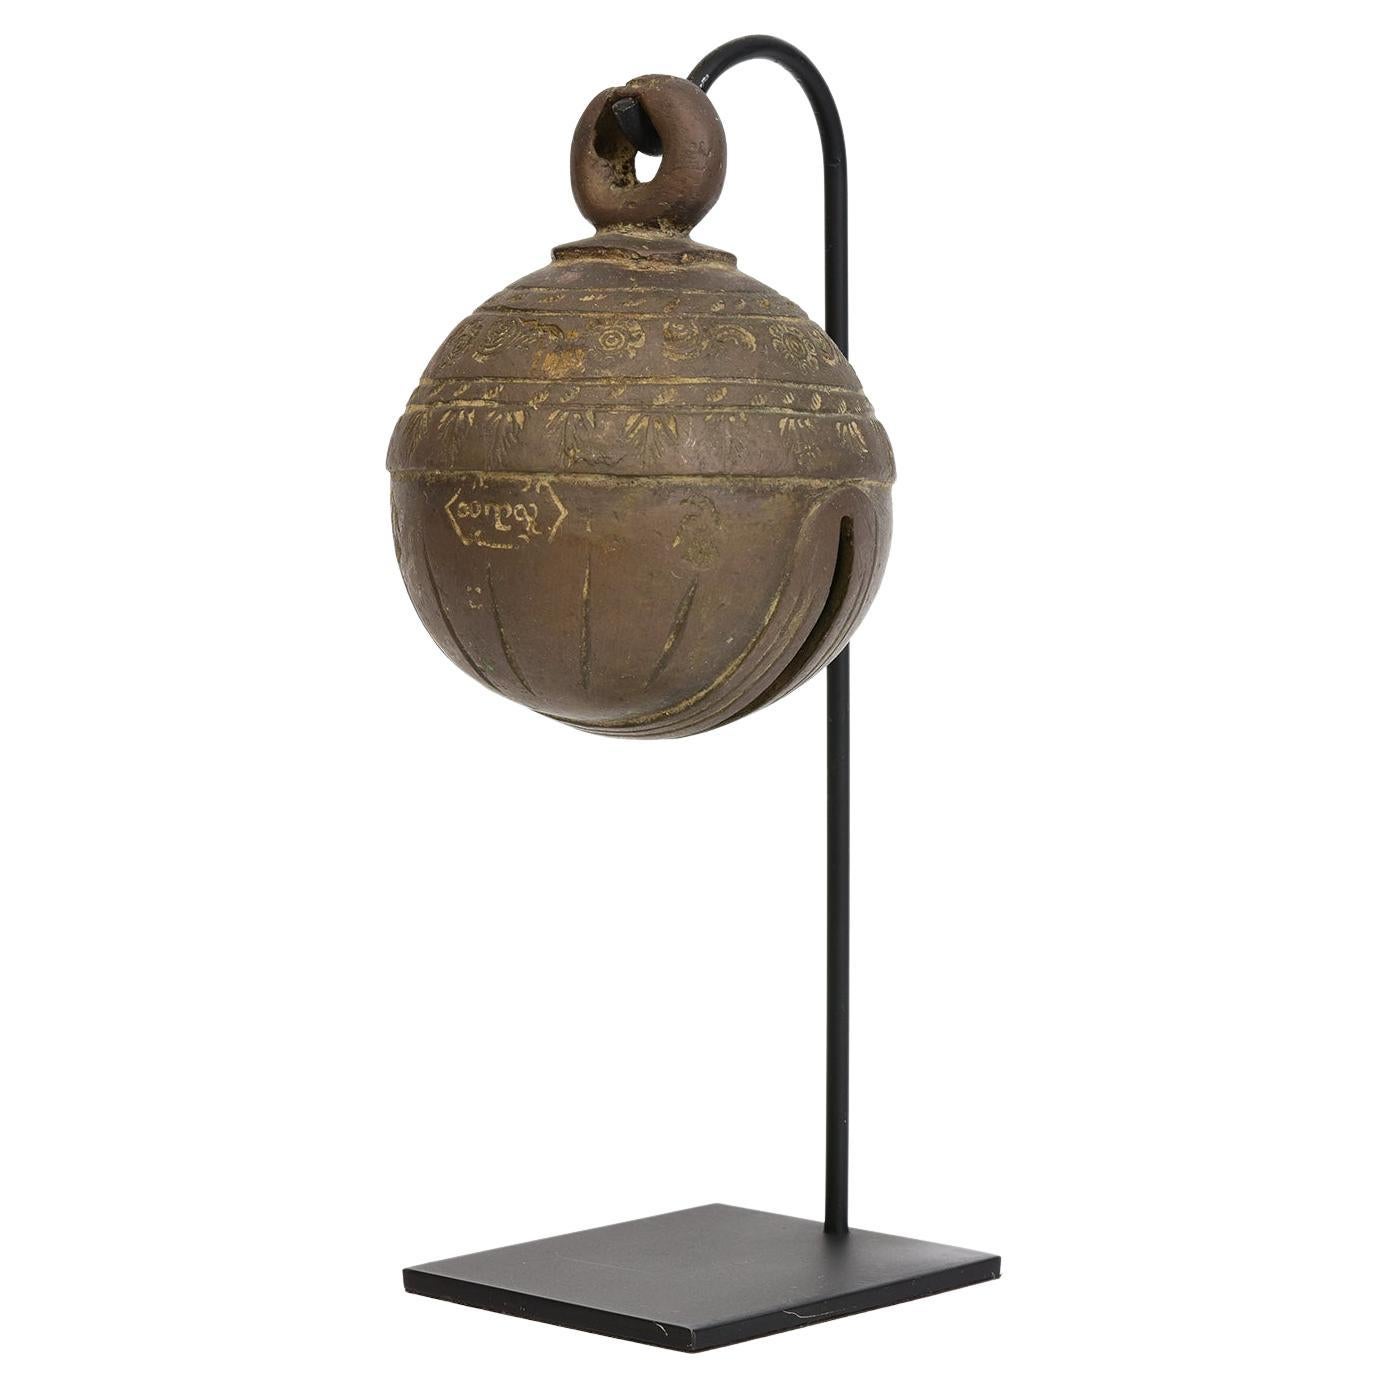 Ancienne cloche d'éléphant birmane en bronze du 19ème siècle avec support